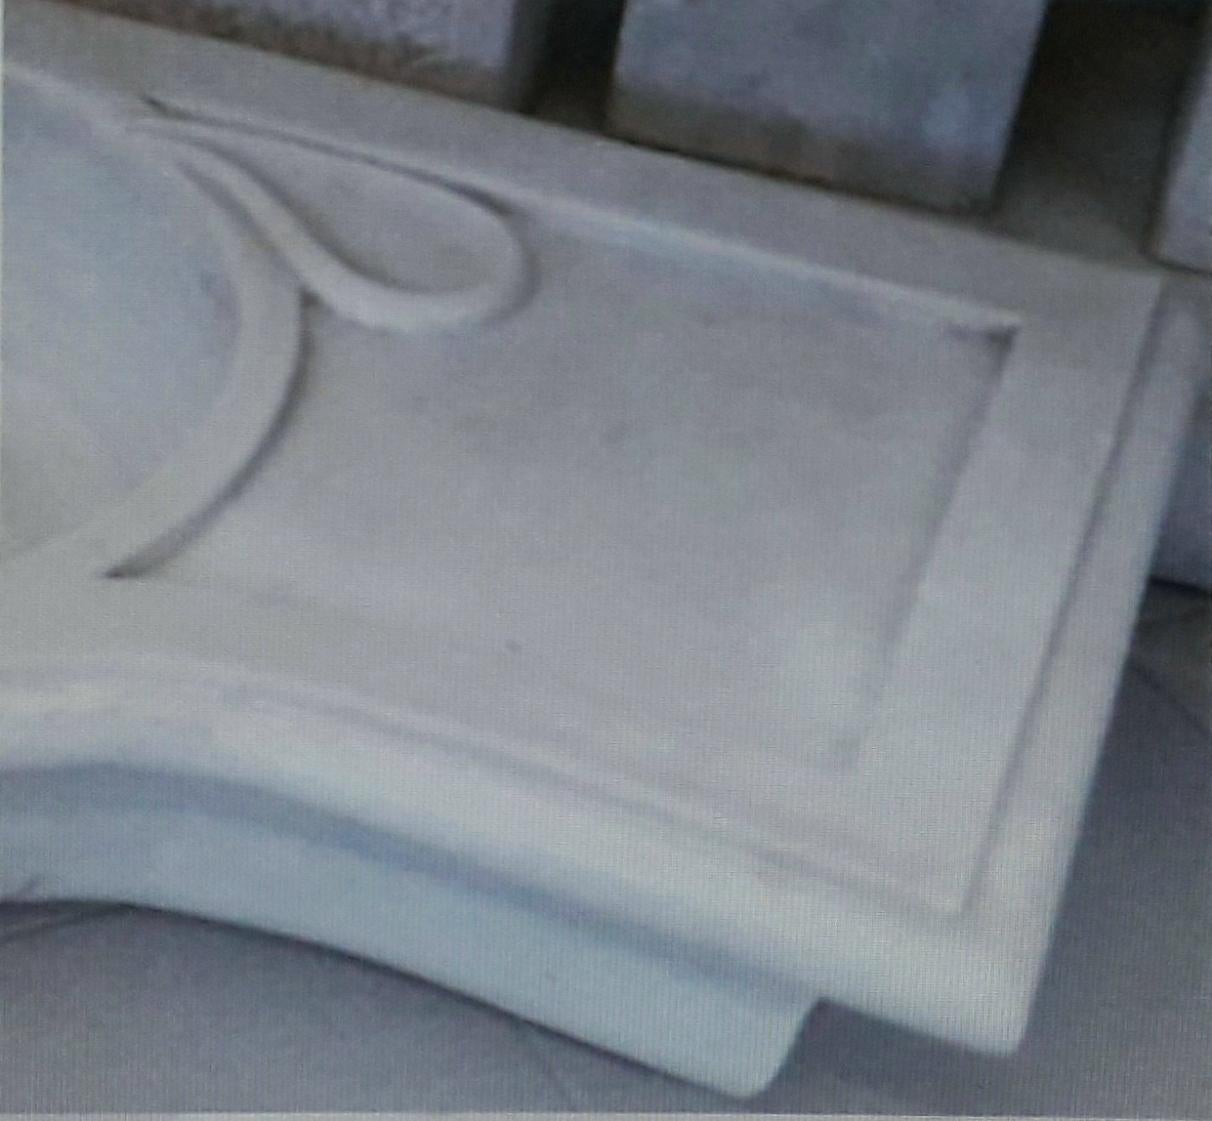 Classic Style geschnitzter Marmor Stone Waschbecken 
Dieses zeitlos schöne, klassische italienische Waschbecken wird aus einem einzigen Block weißen Marmors geschnitten, dessen Design sich seit der griechischen und römischen Zeit nicht mehr